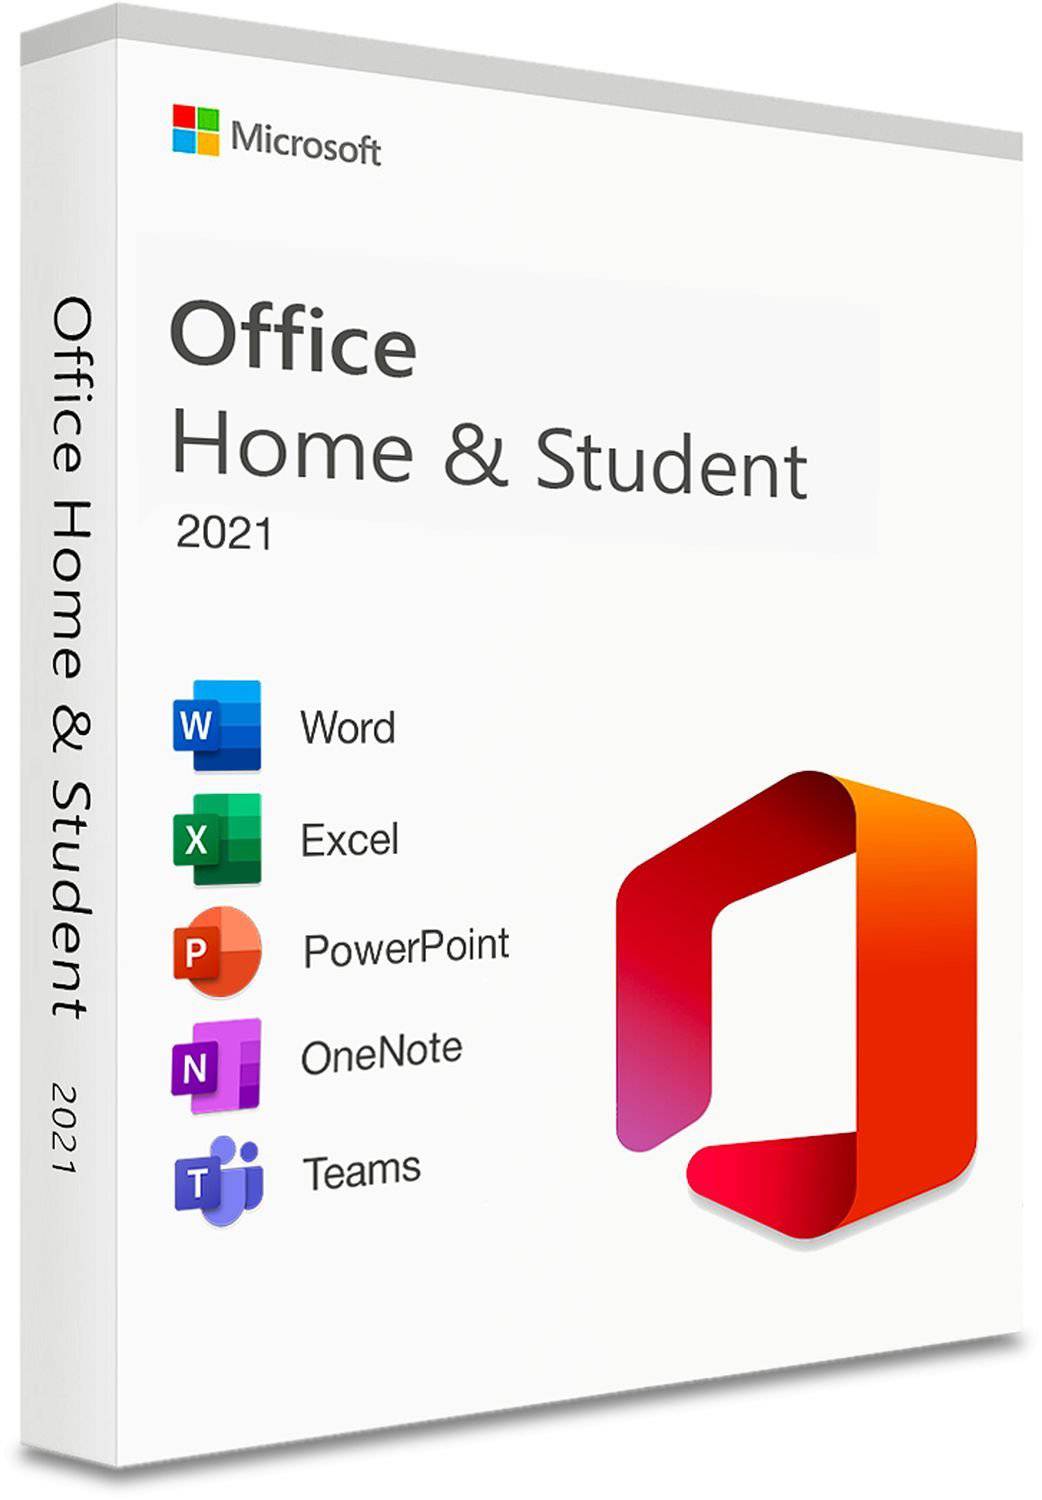 Microsoft Office 2021 Home & Student | Full Version | Genuine Lifetime License | Australian Stock